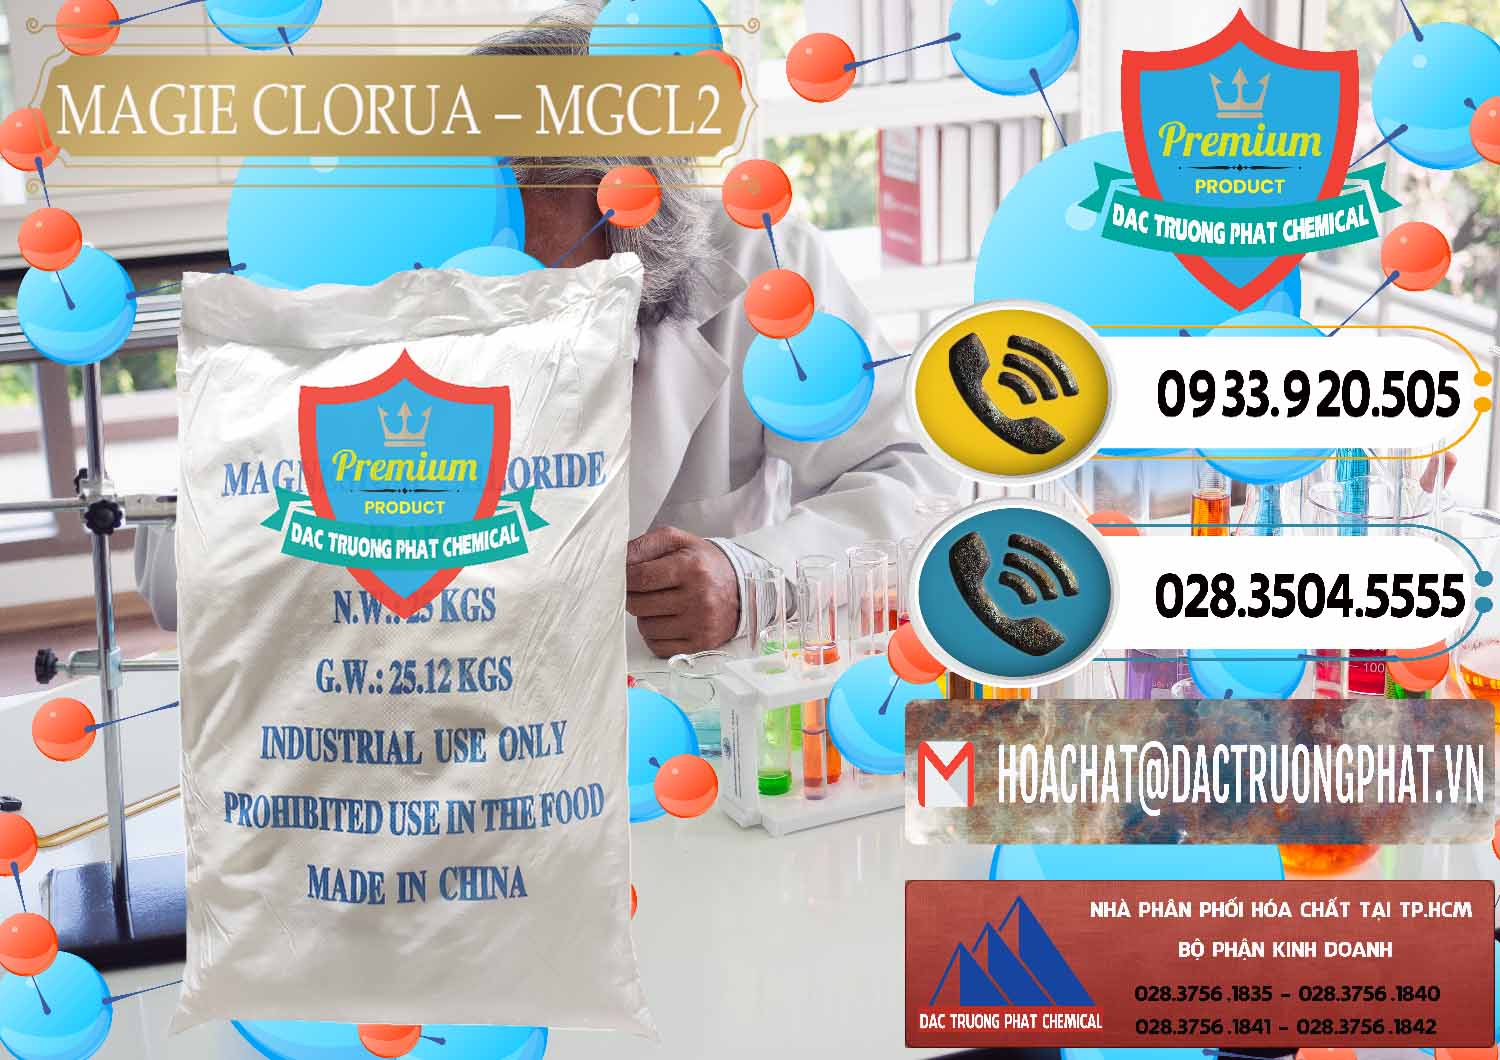 Công ty chuyên bán & phân phối Magie Clorua – MGCL2 96% Dạng Vảy Trung Quốc China - 0091 - Cung cấp _ nhập khẩu hóa chất tại TP.HCM - hoachatdetnhuom.vn